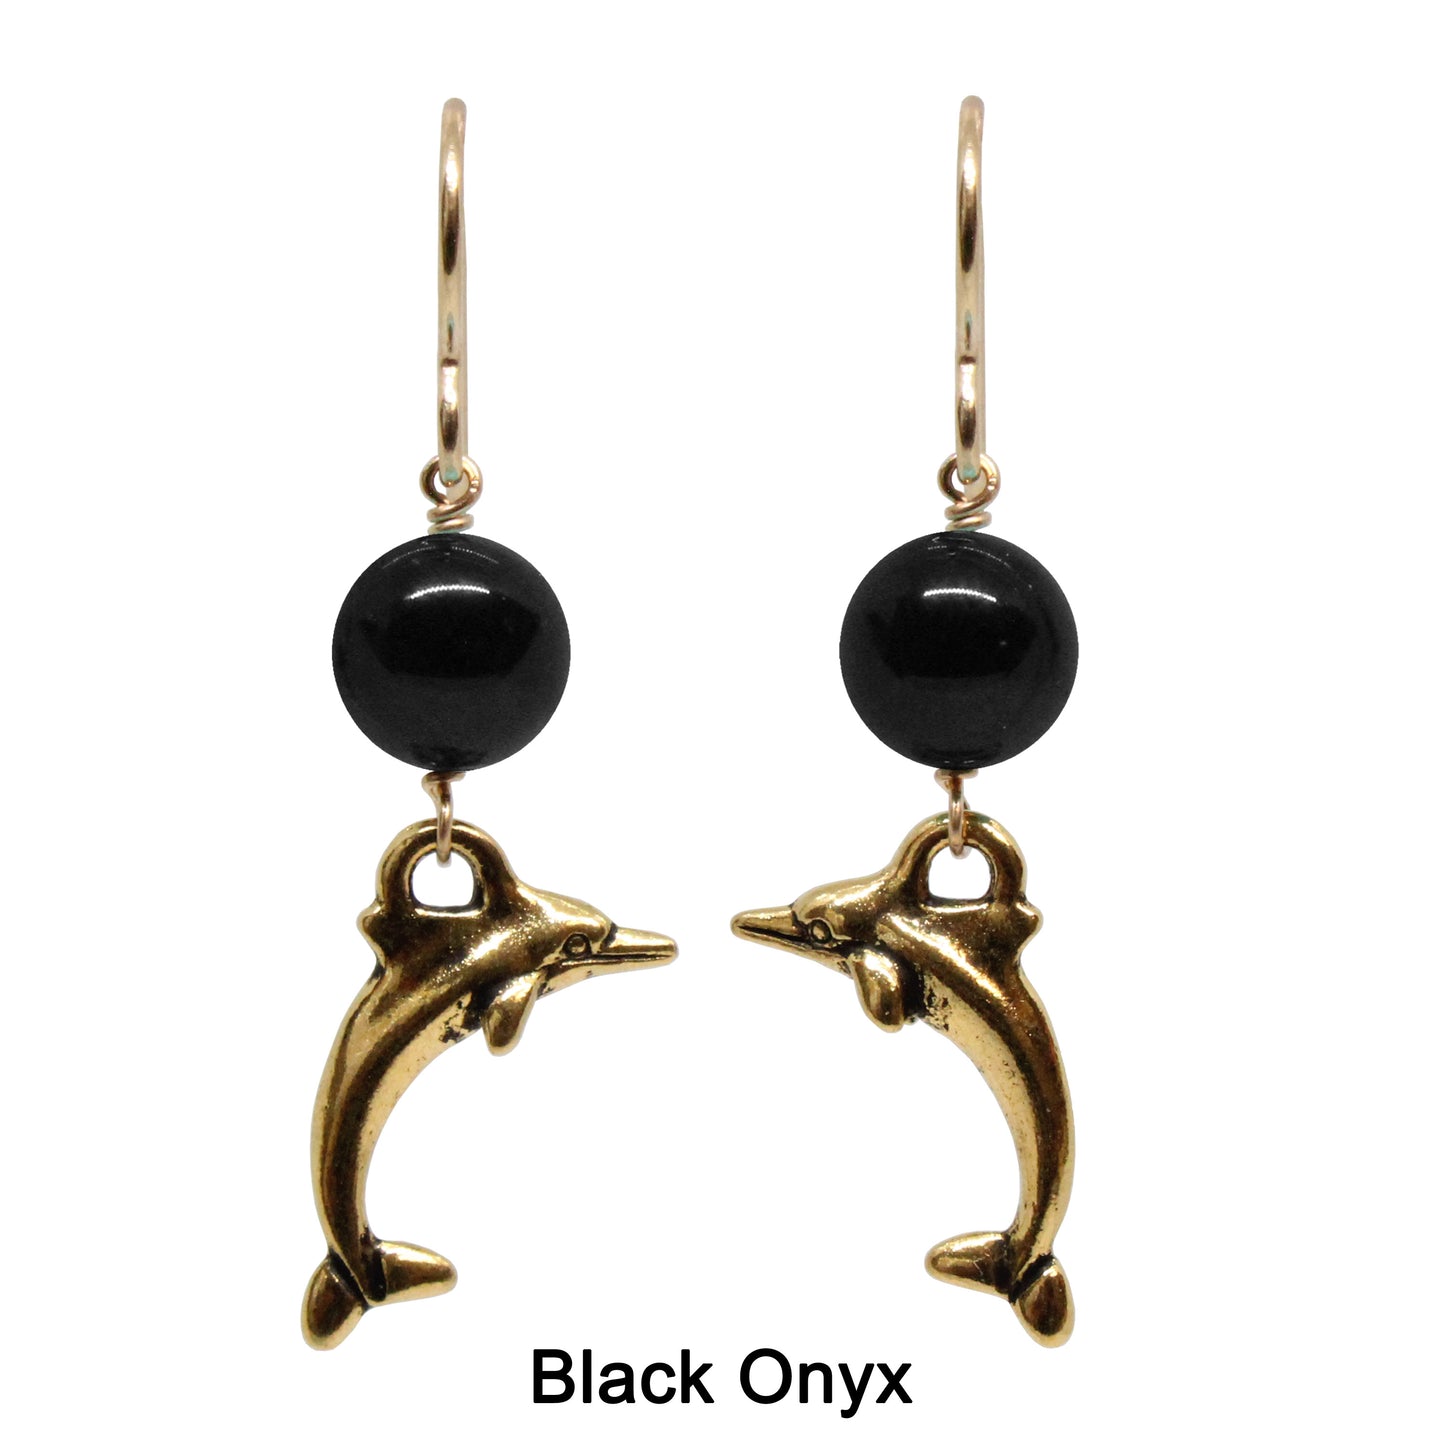 Dolphin Earrings / 43mm length / gold filled hook earwires / choose from angelite, aventurine, black onyx, carnelian, garnet, pink opal